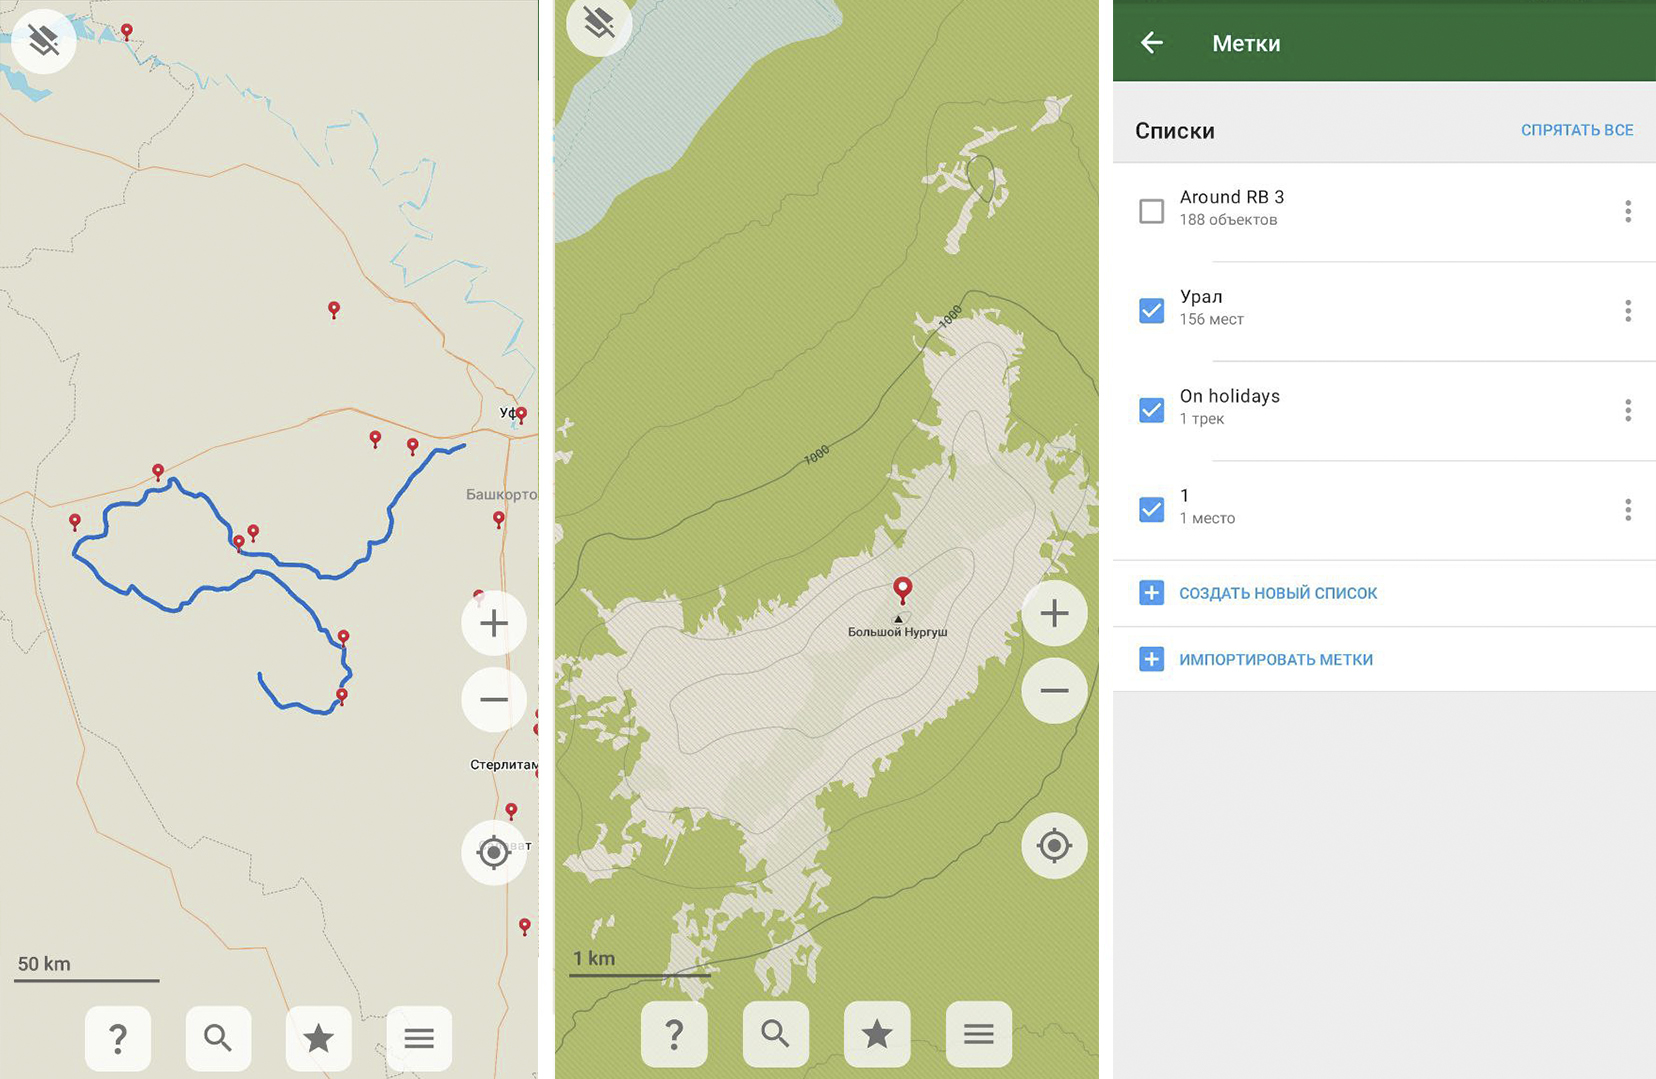 Смартфон для навигации в походах: какое поставить приложение, где братькарты и треки